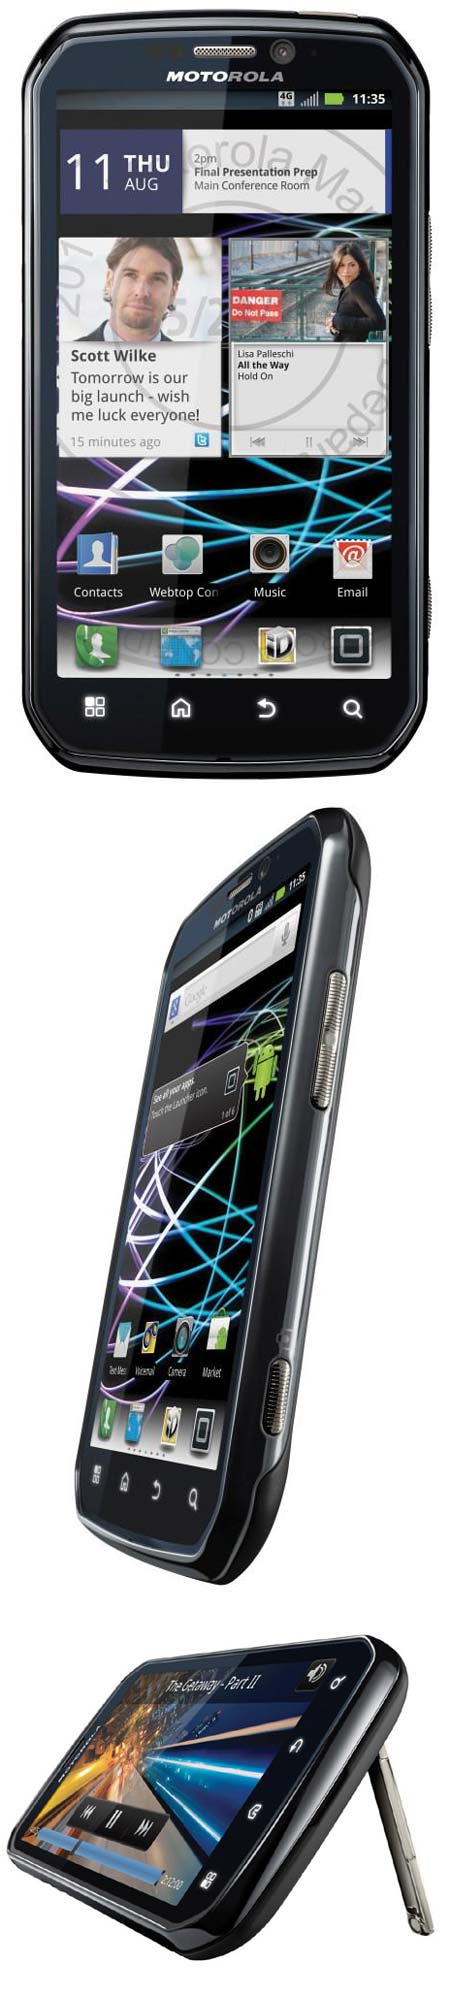 Photon 4G - новый смартфон от Motorola